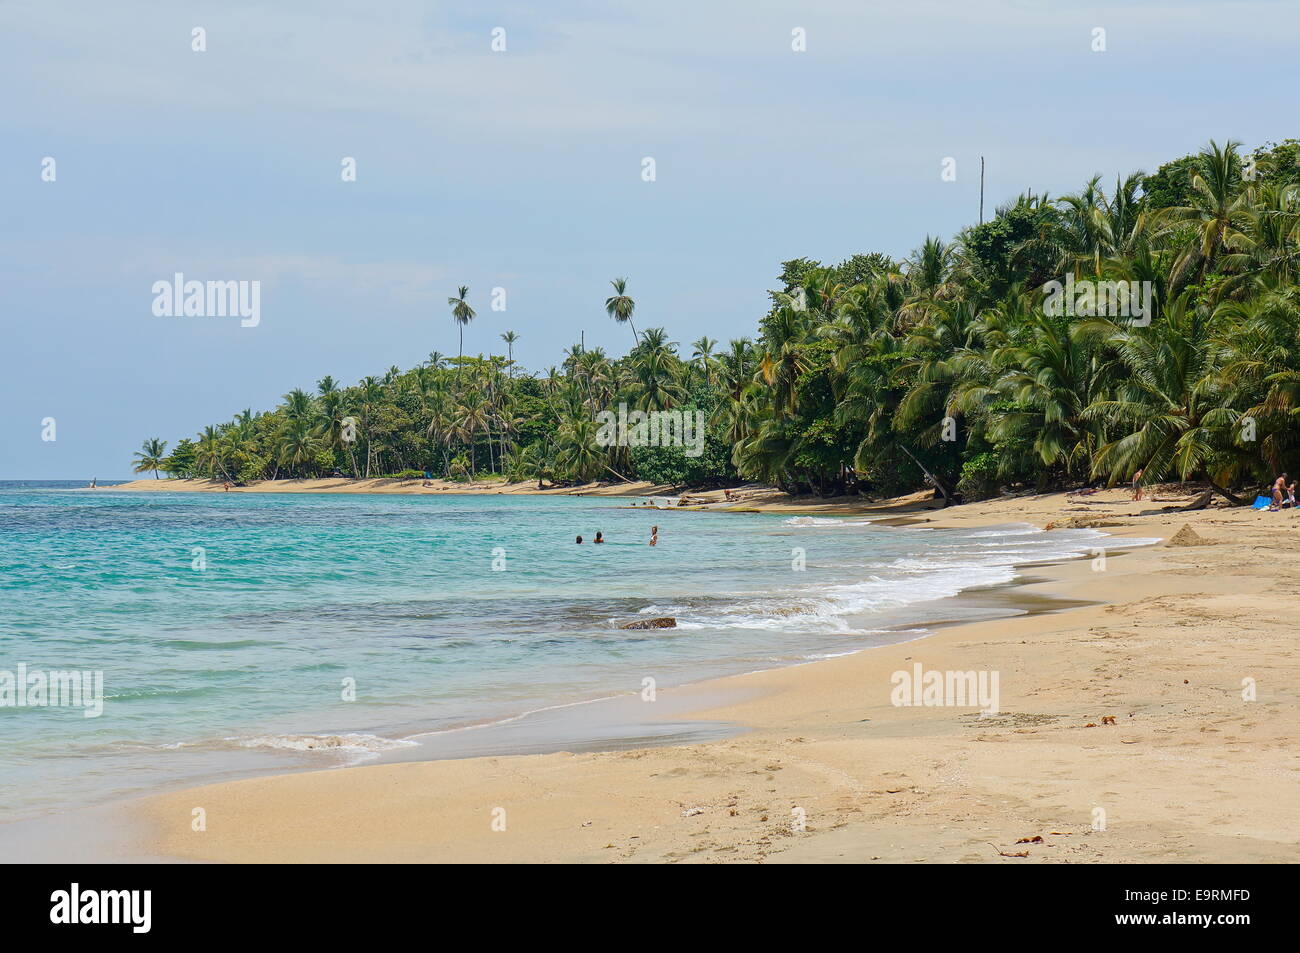 Spiaggia con splendida vegetazione tropicale sulla costa caraibica del Costa Rica, Punta Uva, Puerto Viejo de Talamanca Foto Stock